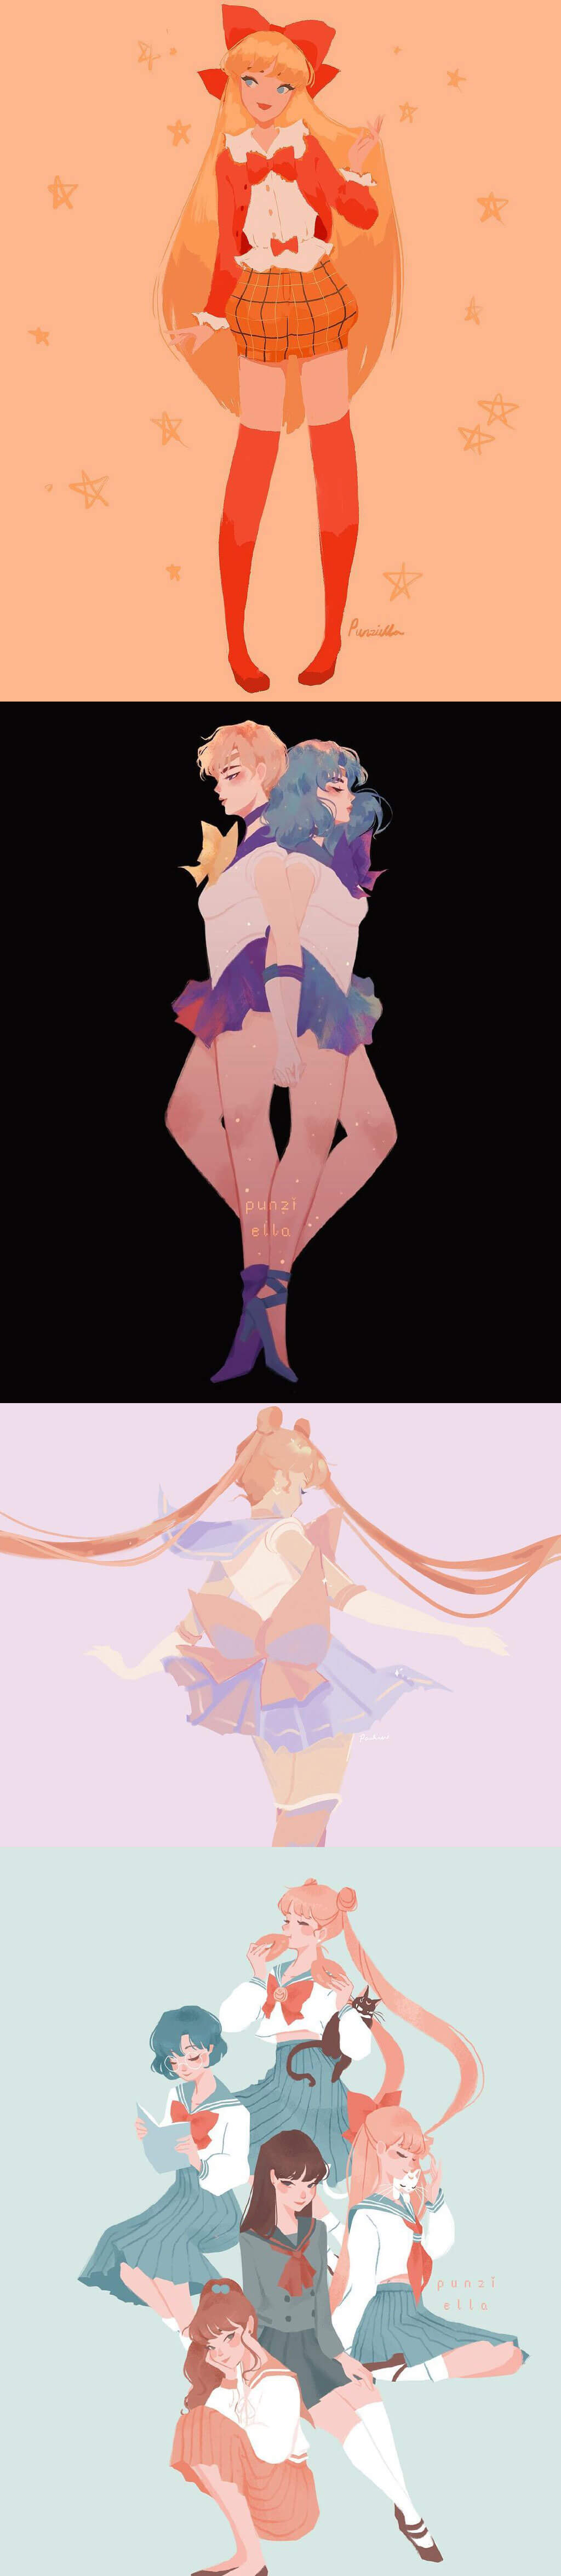 Sailor Moon Fanart by Pauline